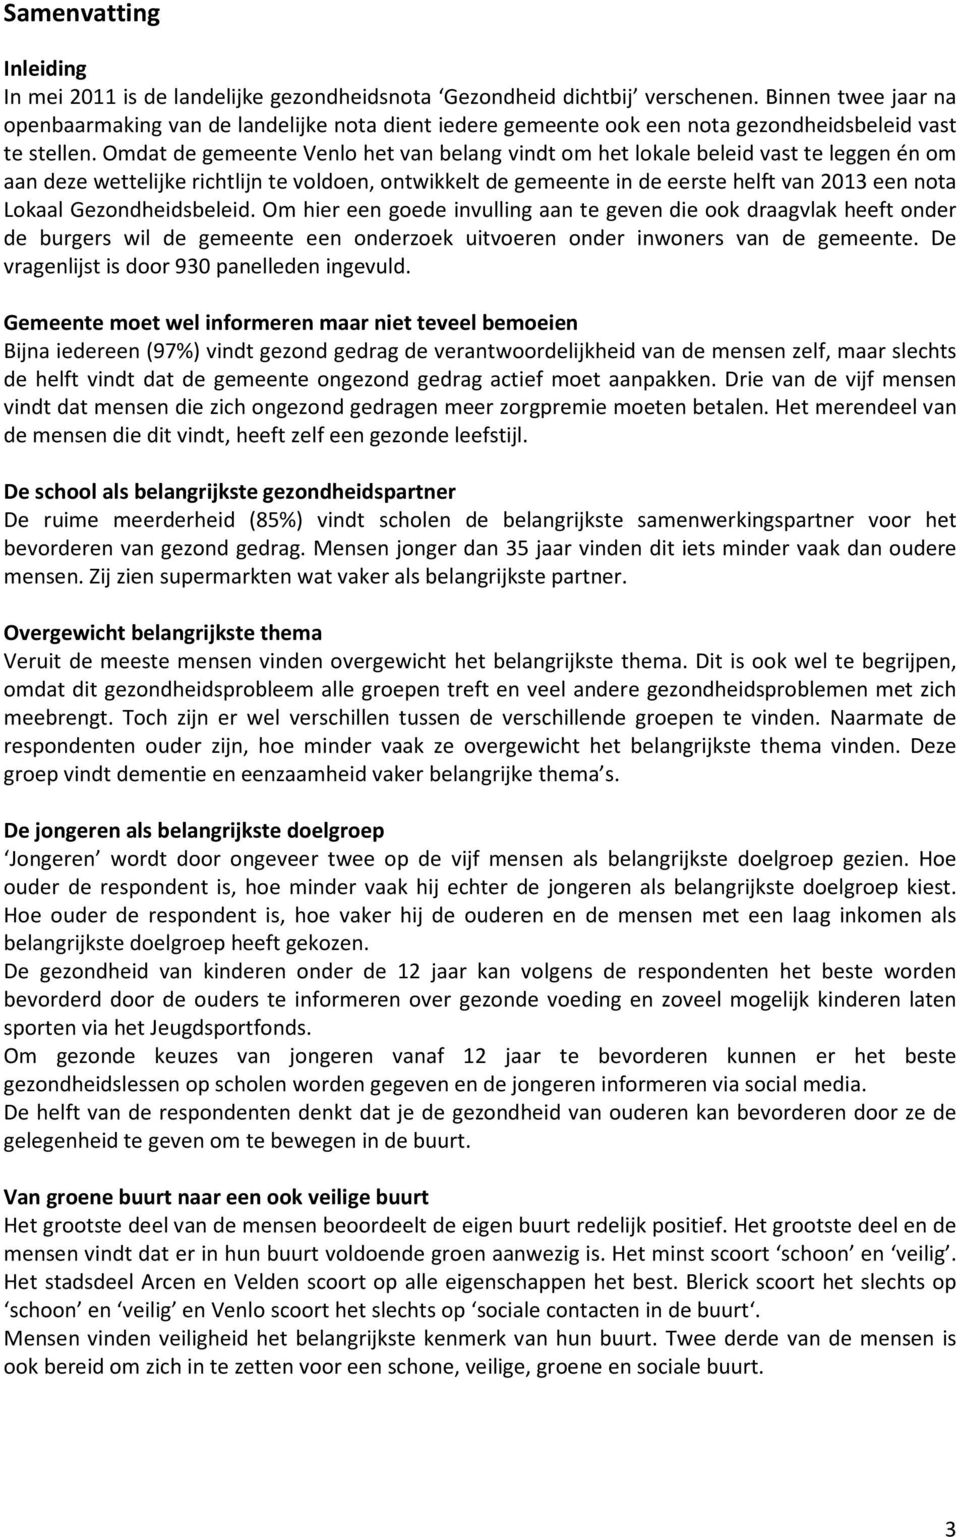 Omdat de gemeente Venlo het van belang vindt om het lokale beleid vast te leggen én om aan deze wettelijke richtlijn te voldoen, ontwikkelt de gemeente in de eerste helft van 2013 een nota Lokaal